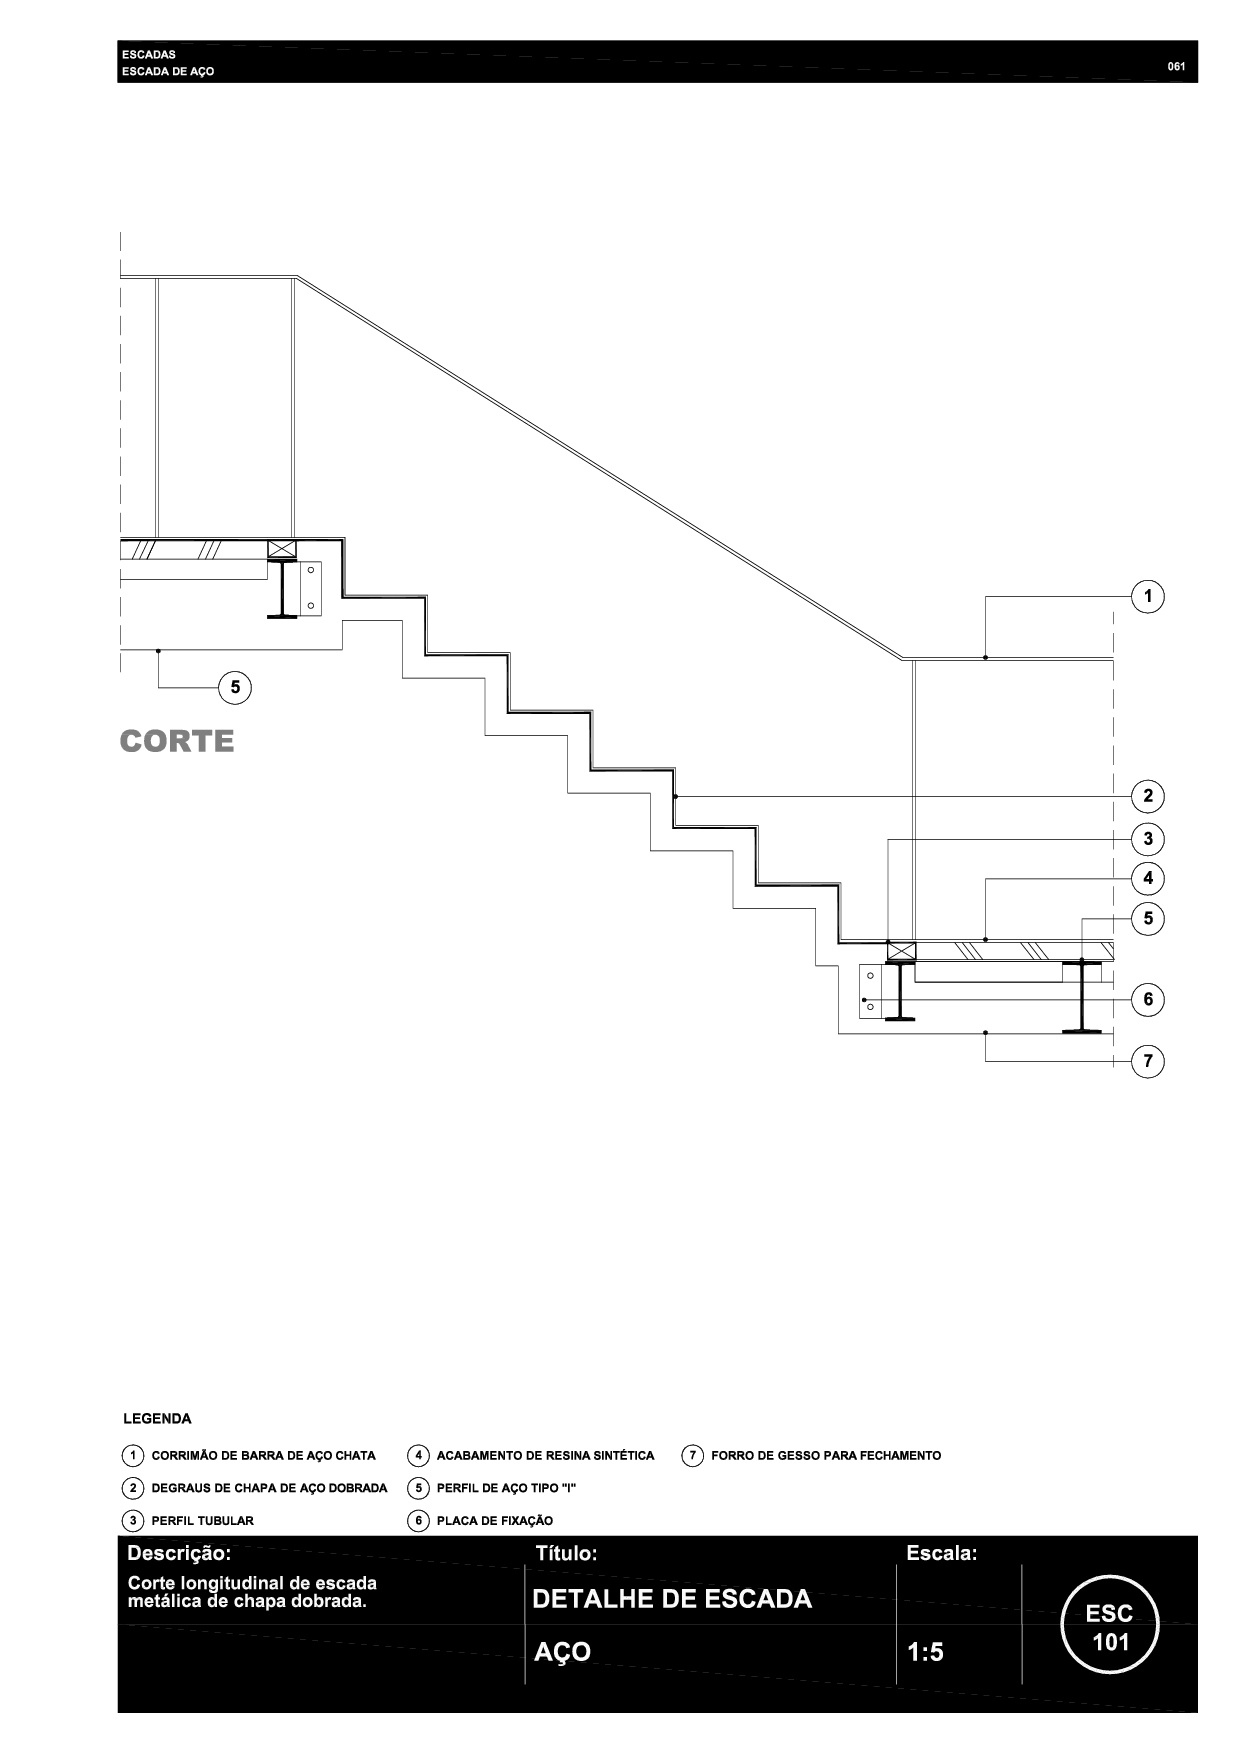 061 ESC 101 Escada de aço R6